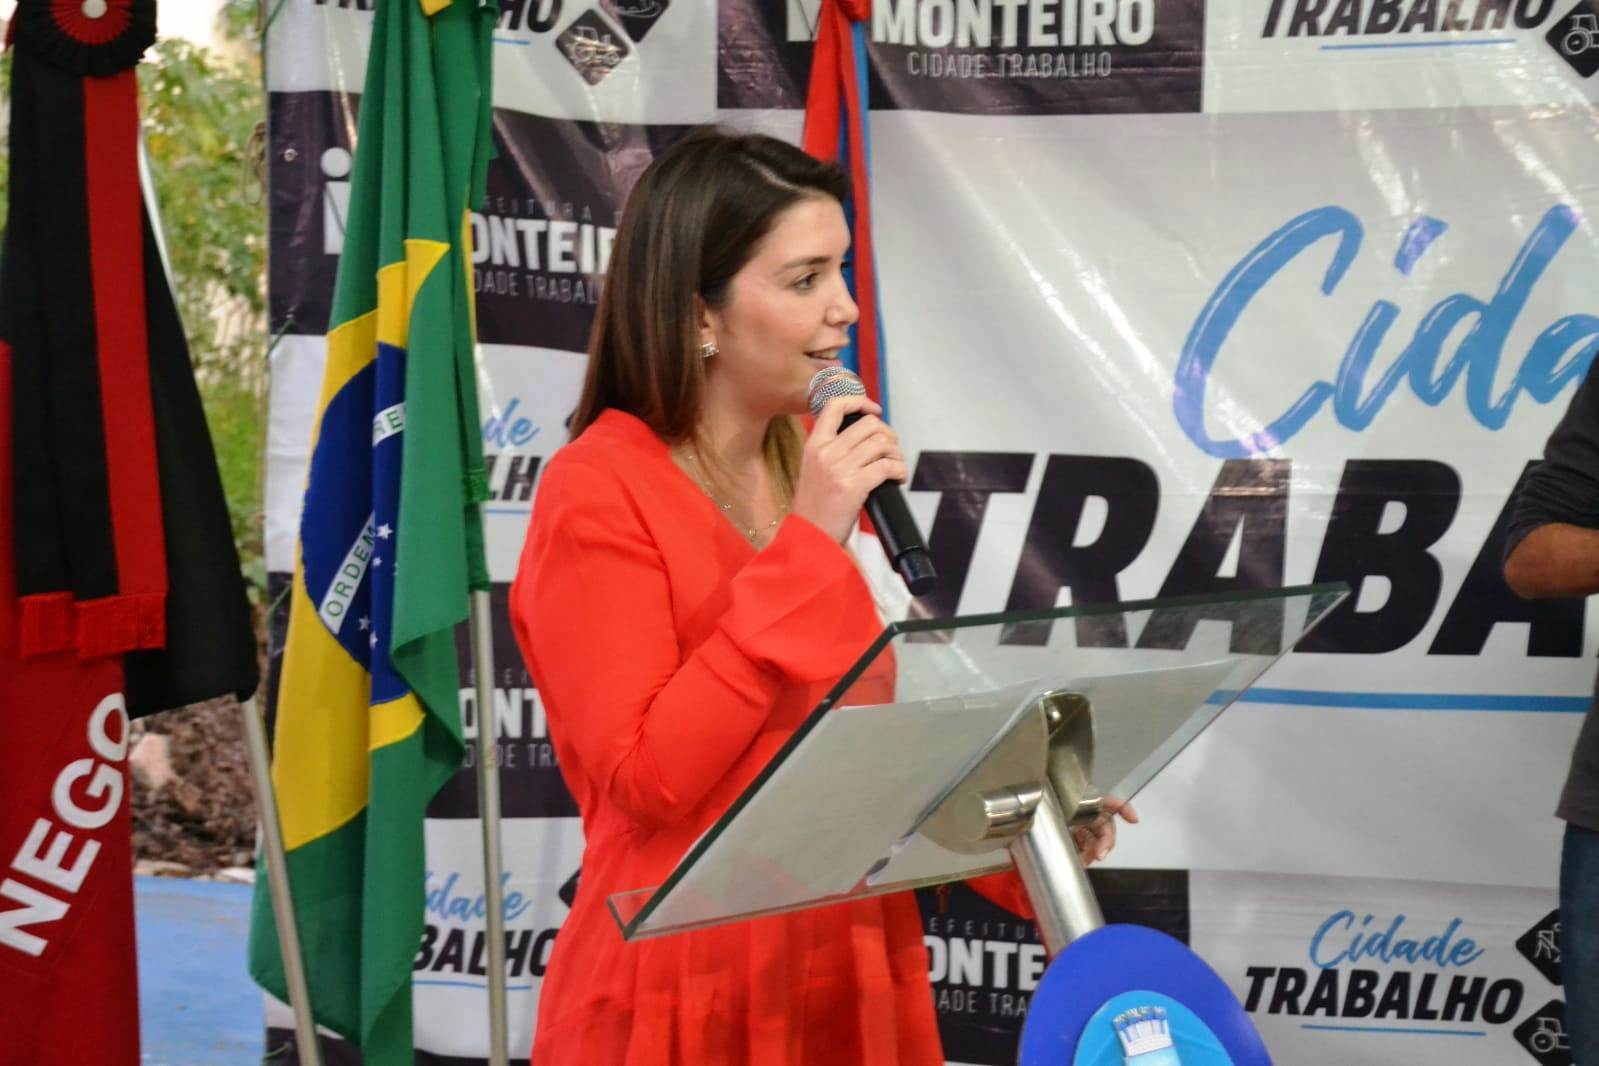 Rua-Alice-Ferreira5 Cidade Trabalho: Prefeita Anna Lorena entrega mais três rua pavimentadas em Monteiro